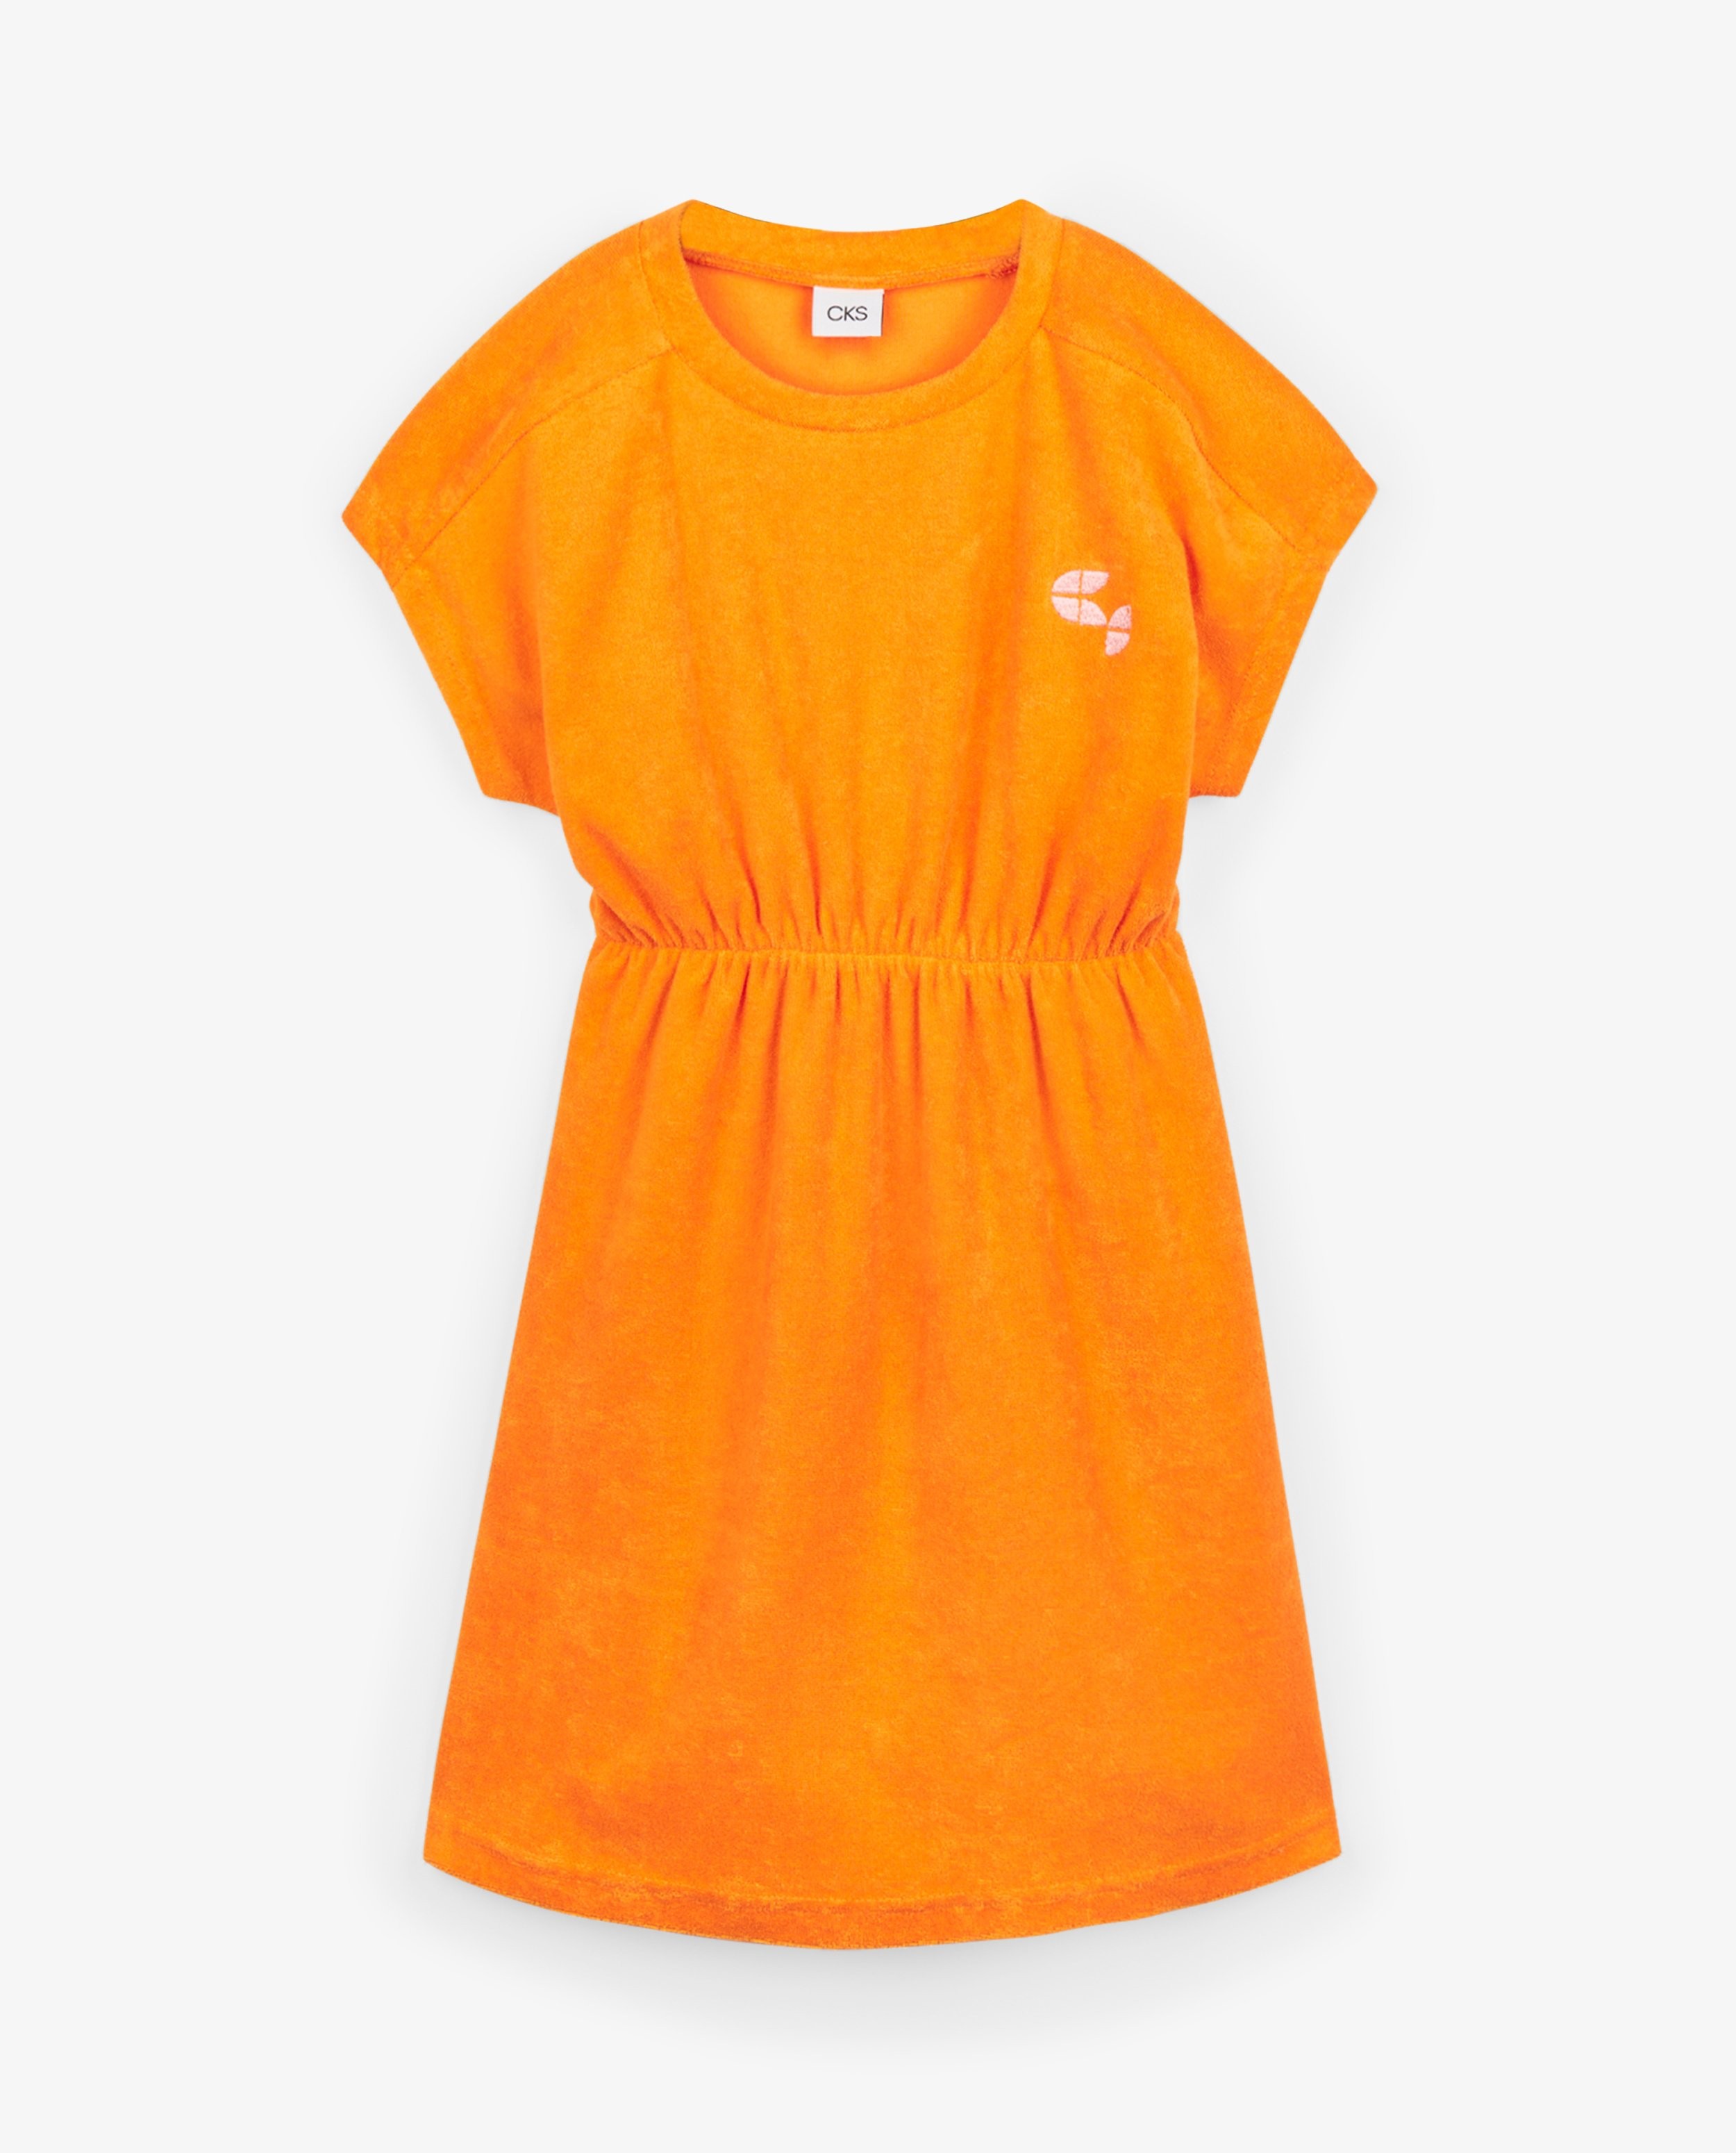 Kleedjes - Oranje jurkje CKS